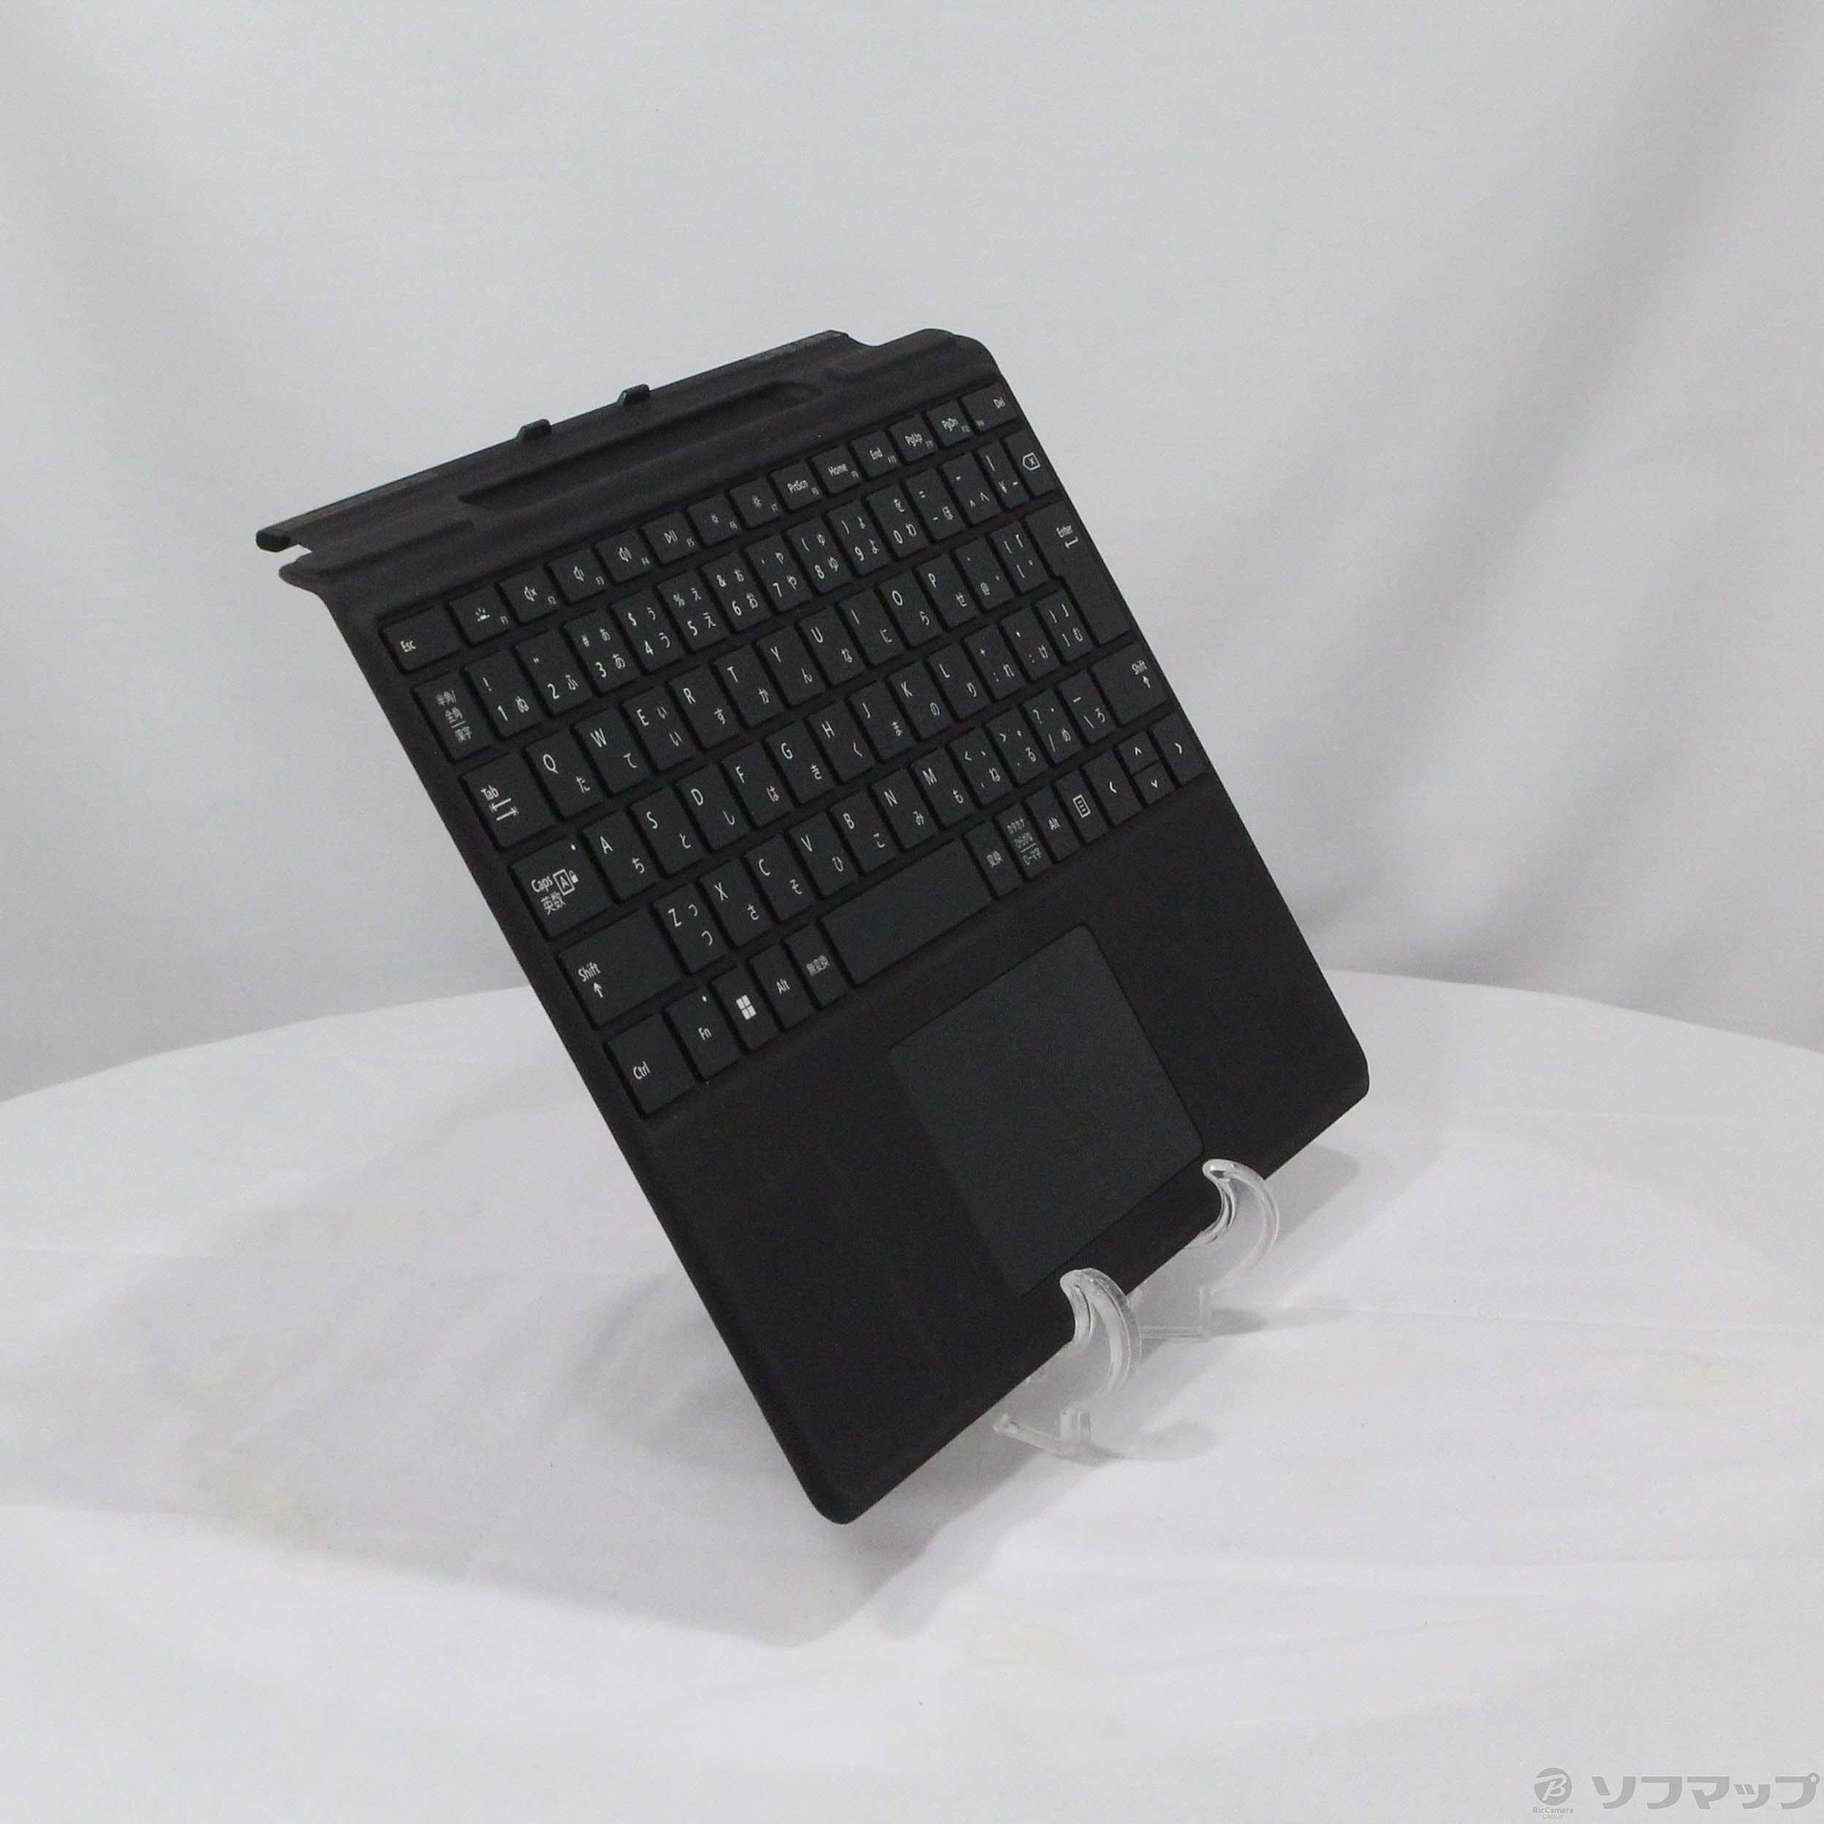 中古】〔展示品〕 Surface Pro Signature キーボード ブラック 8XA